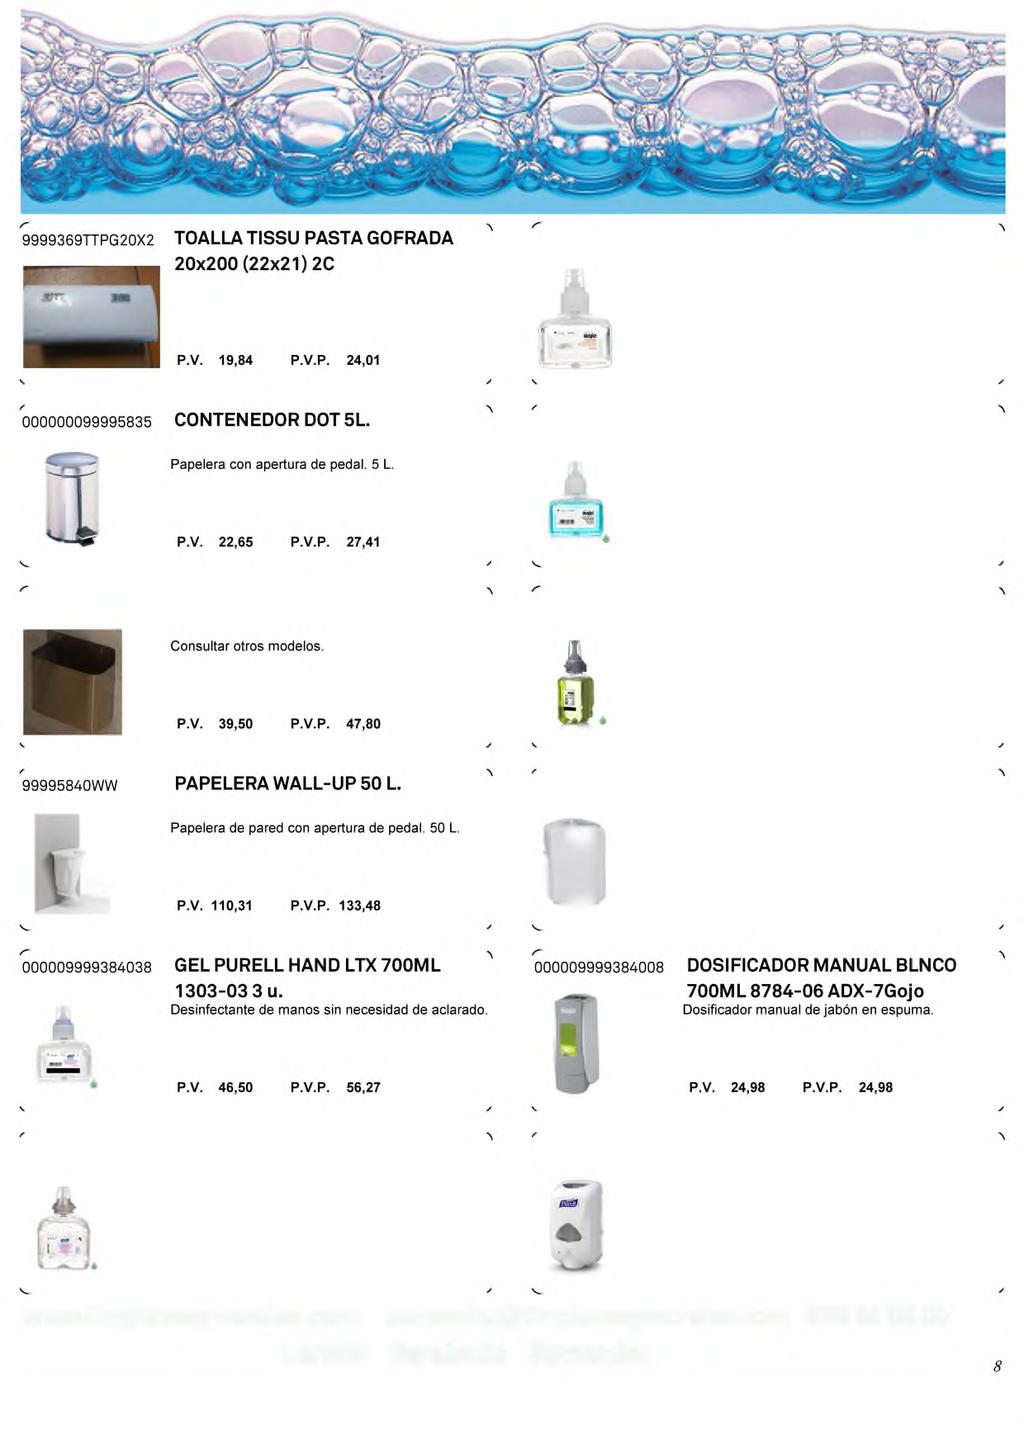 000009999384010 JABON ANTIBAC FOAM SOAP 700 ML 1342-03 3u. Gojo Jabón en espuma bactericida. Cumple la normativa sanitaria para uso en cocinas.